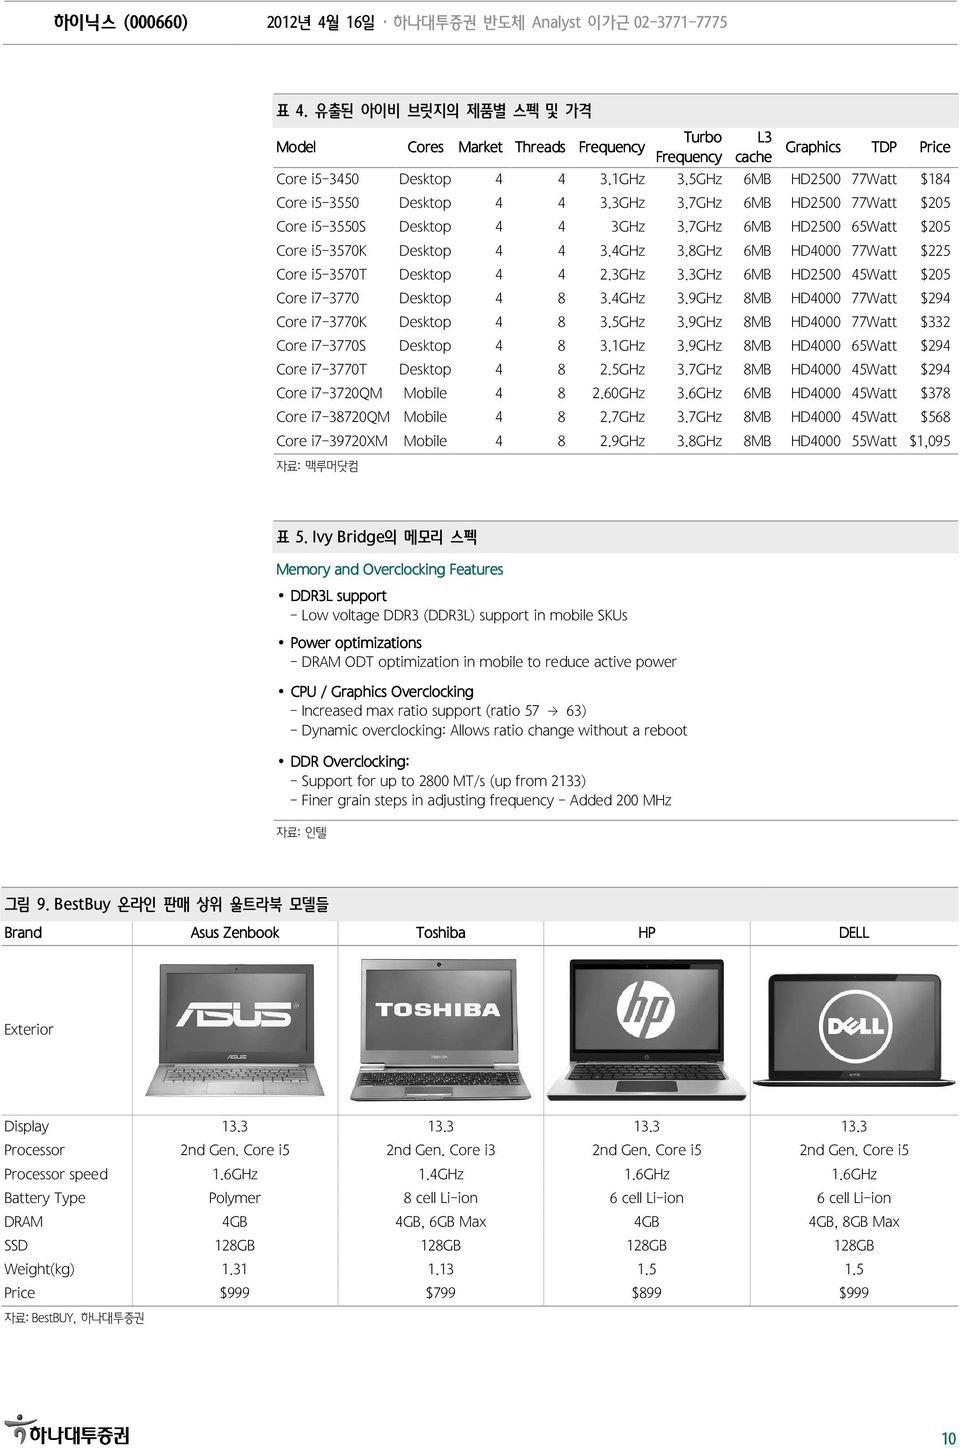 4GHz 3.9GHz 8MB HD4 77Watt $294 Core i7-377k Desktop 4 8 3.5GHz 3.9GHz 8MB HD4 77Watt $332 Core i7-377s Desktop 4 8 3.1GHz 3.9GHz 8MB HD4 65Watt $294 Core i7-377t Desktop 4 8 2.5GHz 3.7GHz 8MB HD4 45Watt $294 Core i7-372qm Mobile 4 8 2.